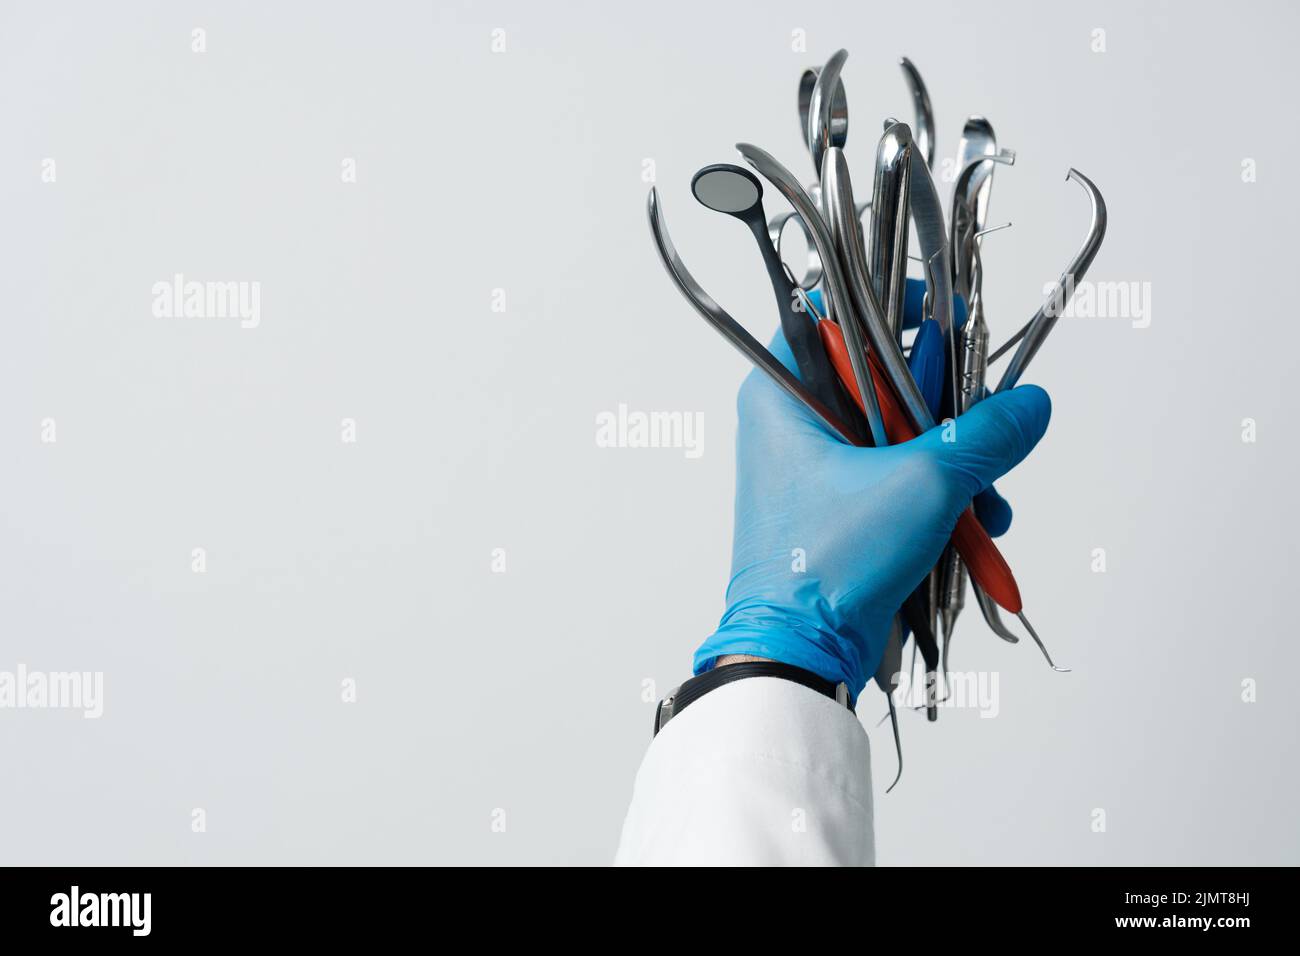 Die Hand des Zahnarztes in einem blauen Handschuh hält eine Reihe von zahnärztlichen Instrumenten, Zahnspiegel, Pinzette, Sondenhaken. Werbung für Zahnmedizin und zahnärztliche Dienstleistungen Stockfoto